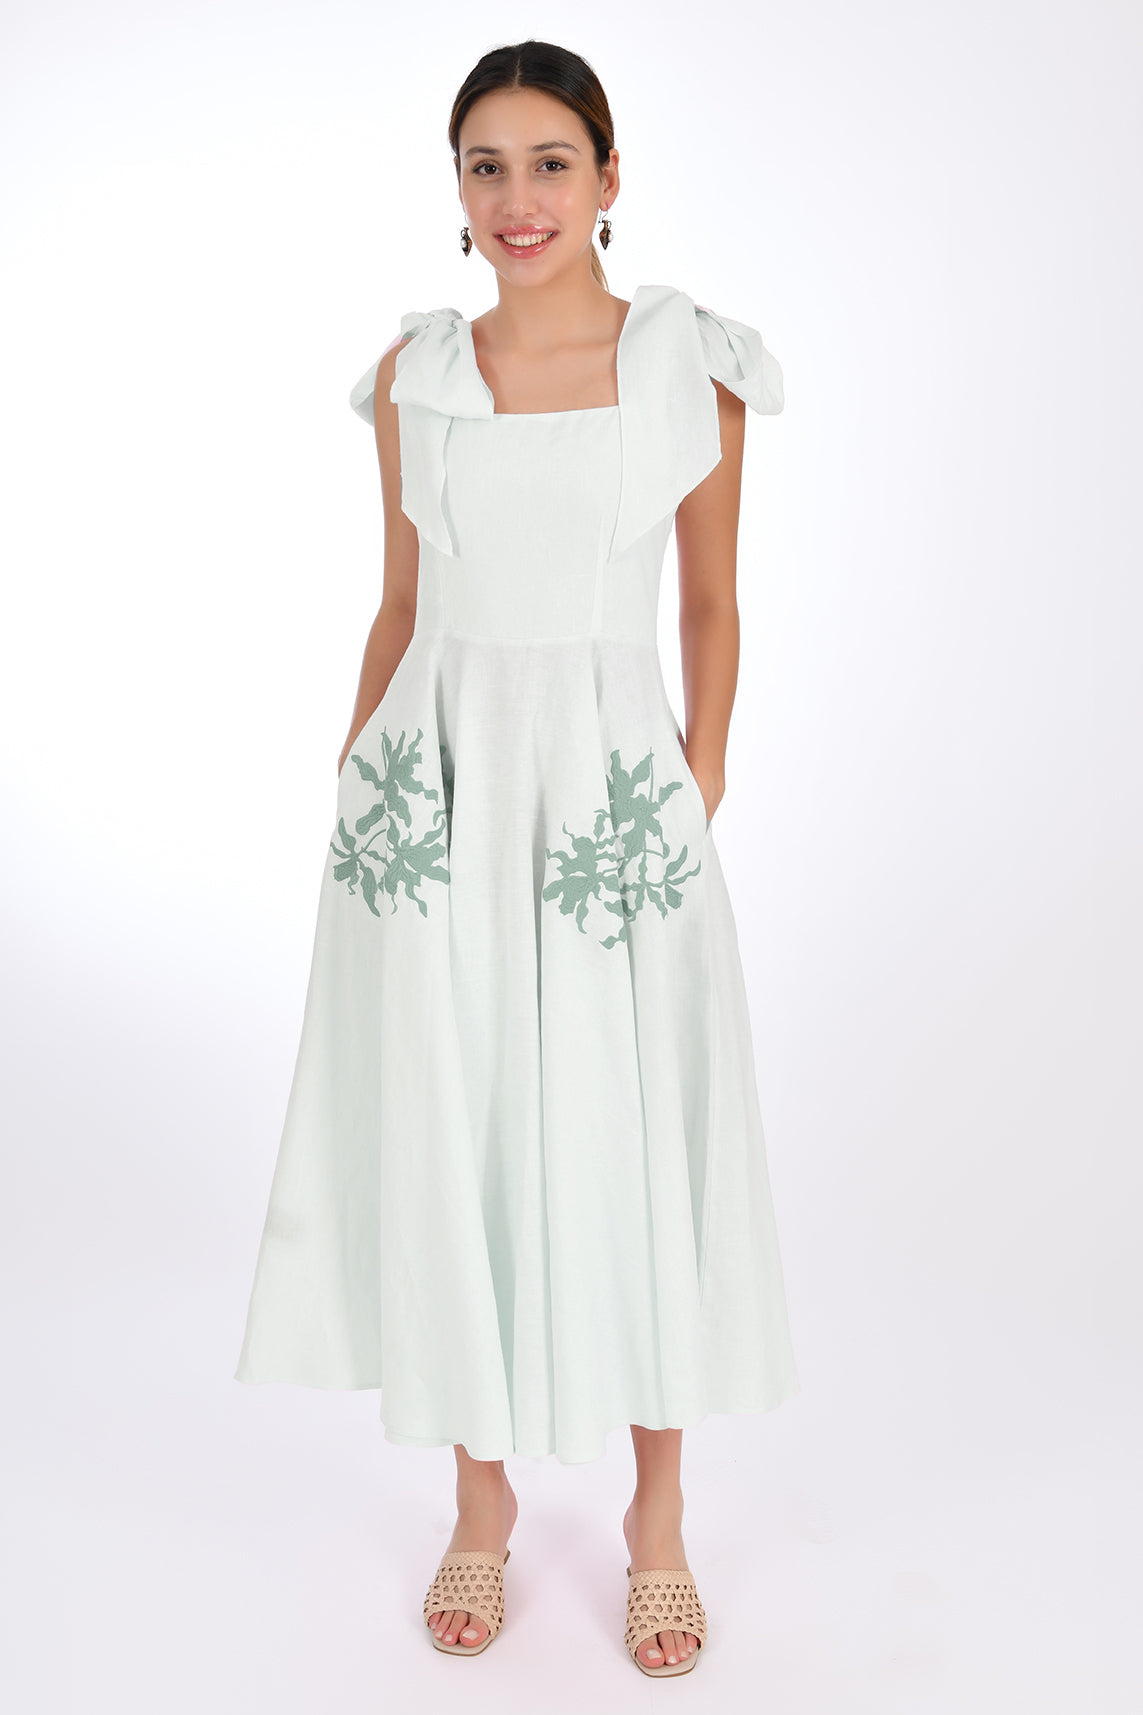 NILEN DRESS (Marassa Collection)